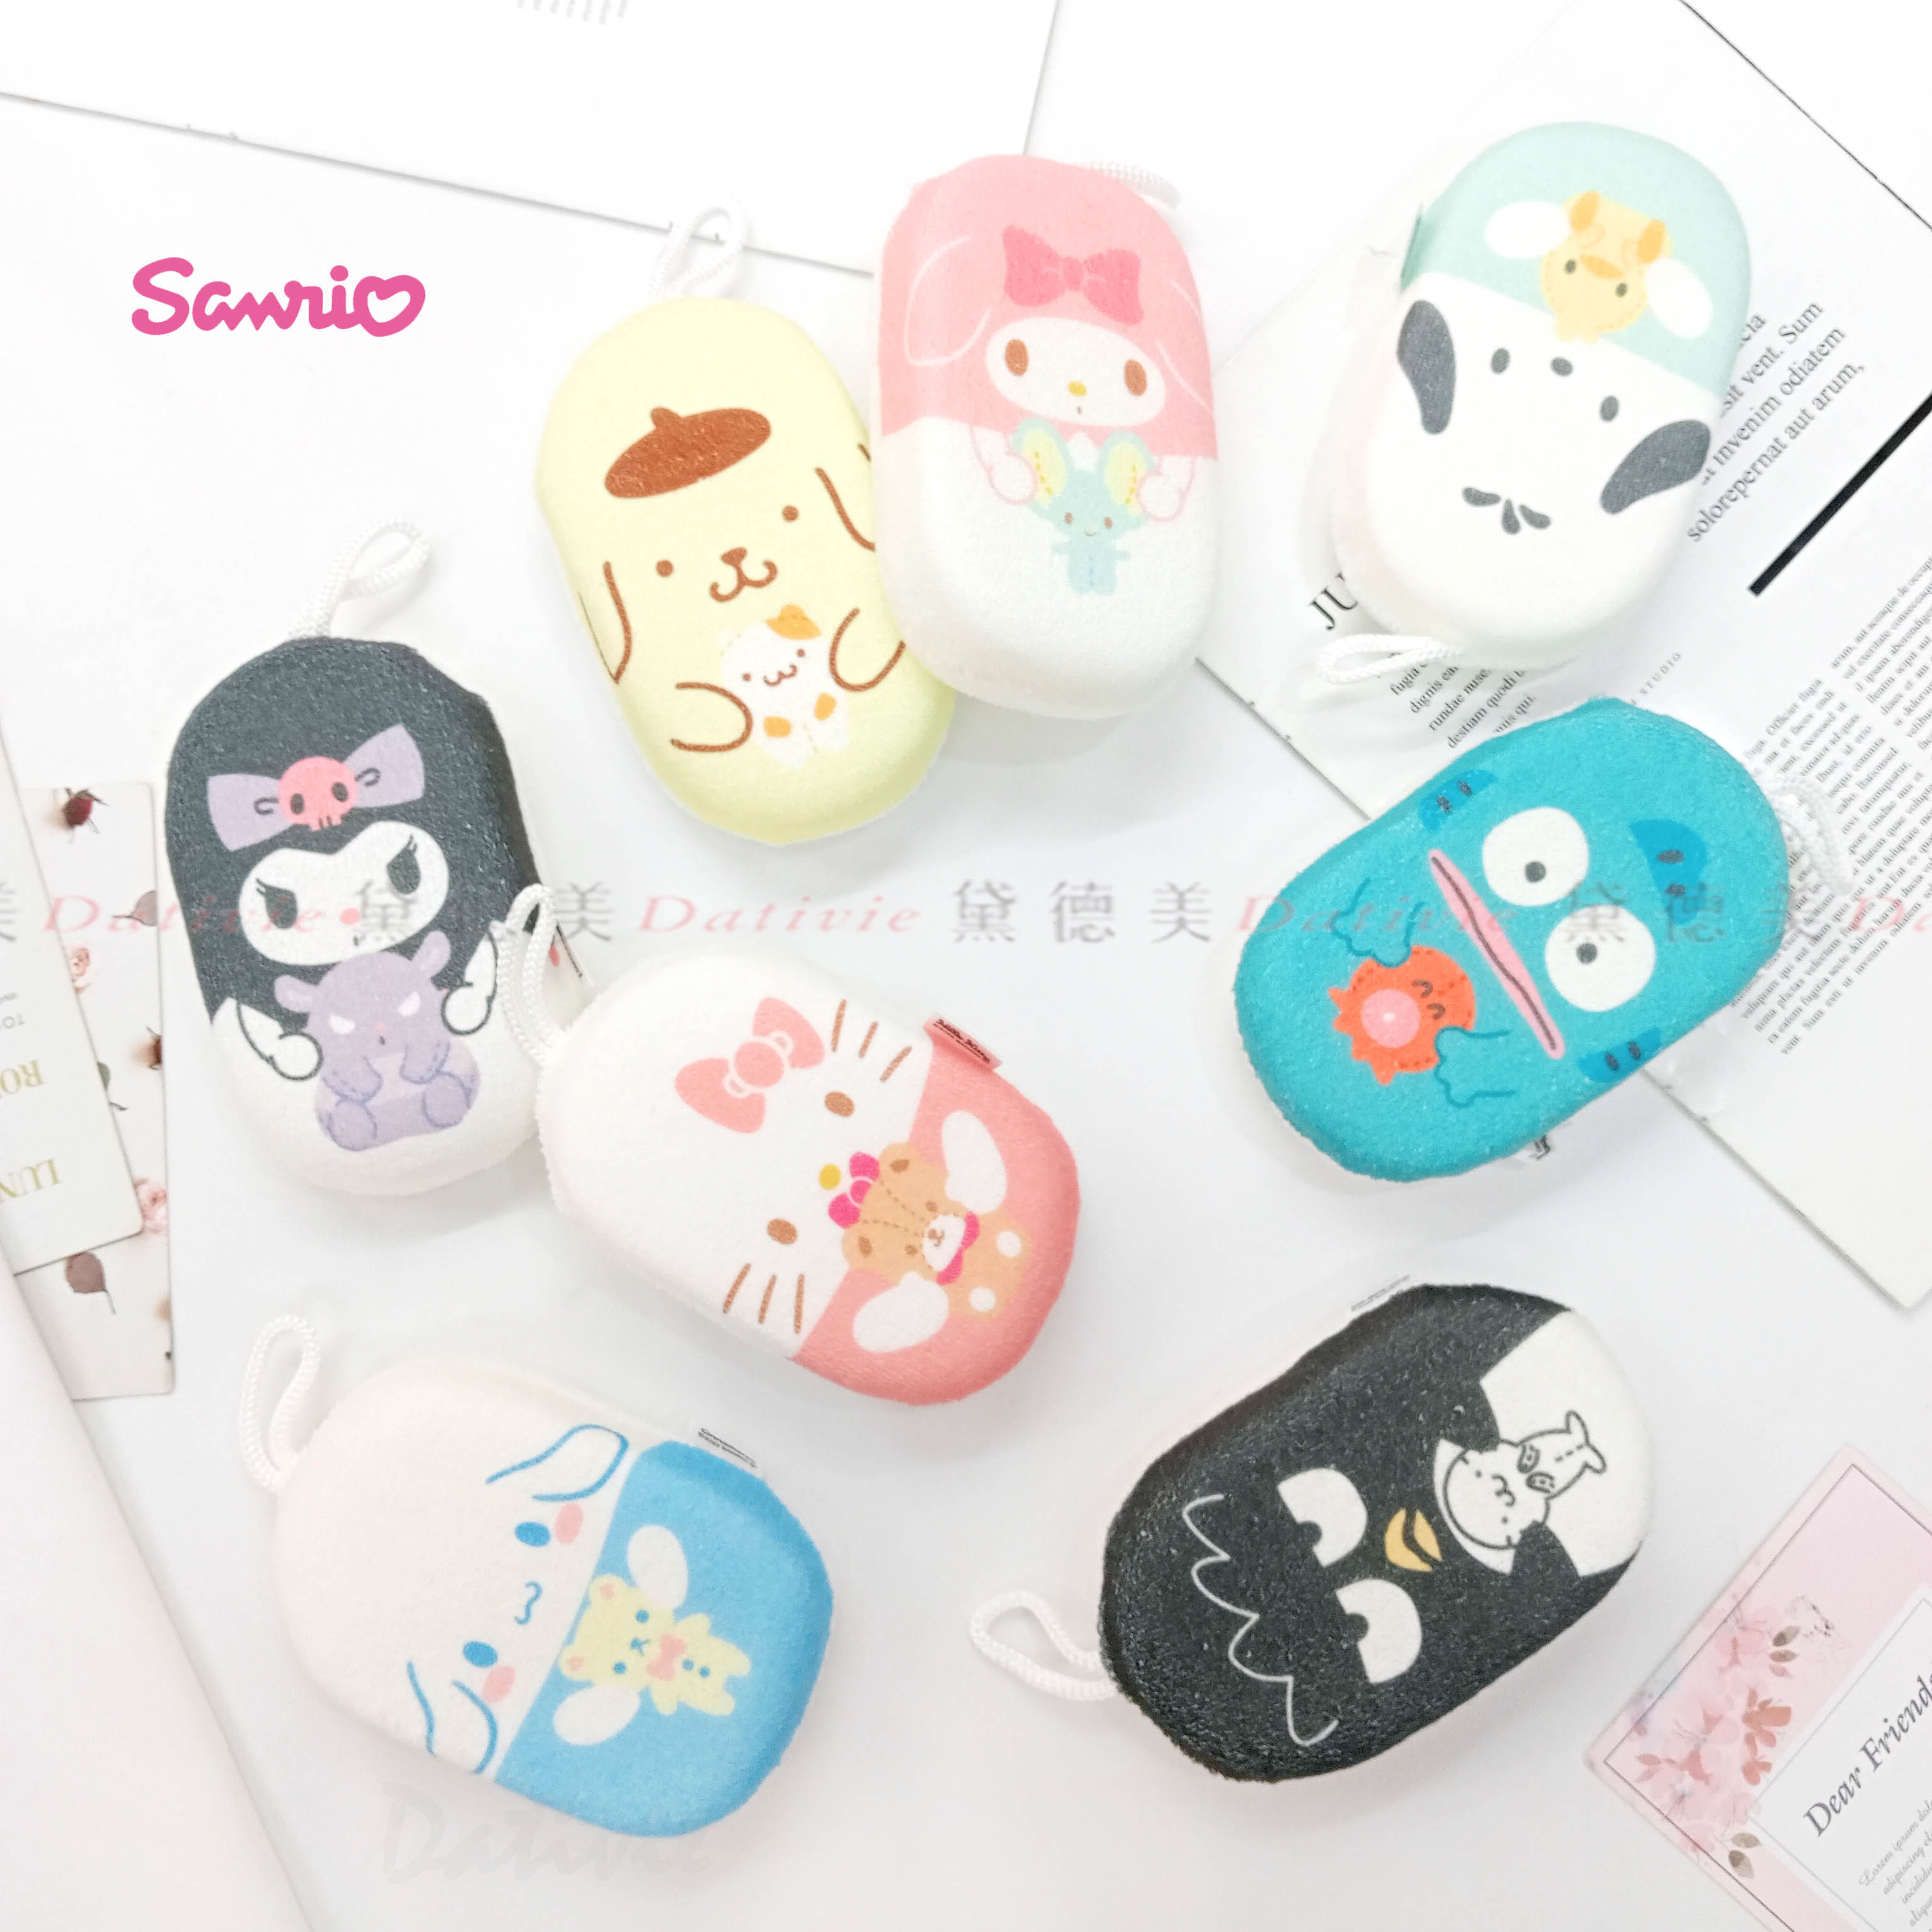 沐浴棉-三麗鷗 Sanrio 日本進口正版授權